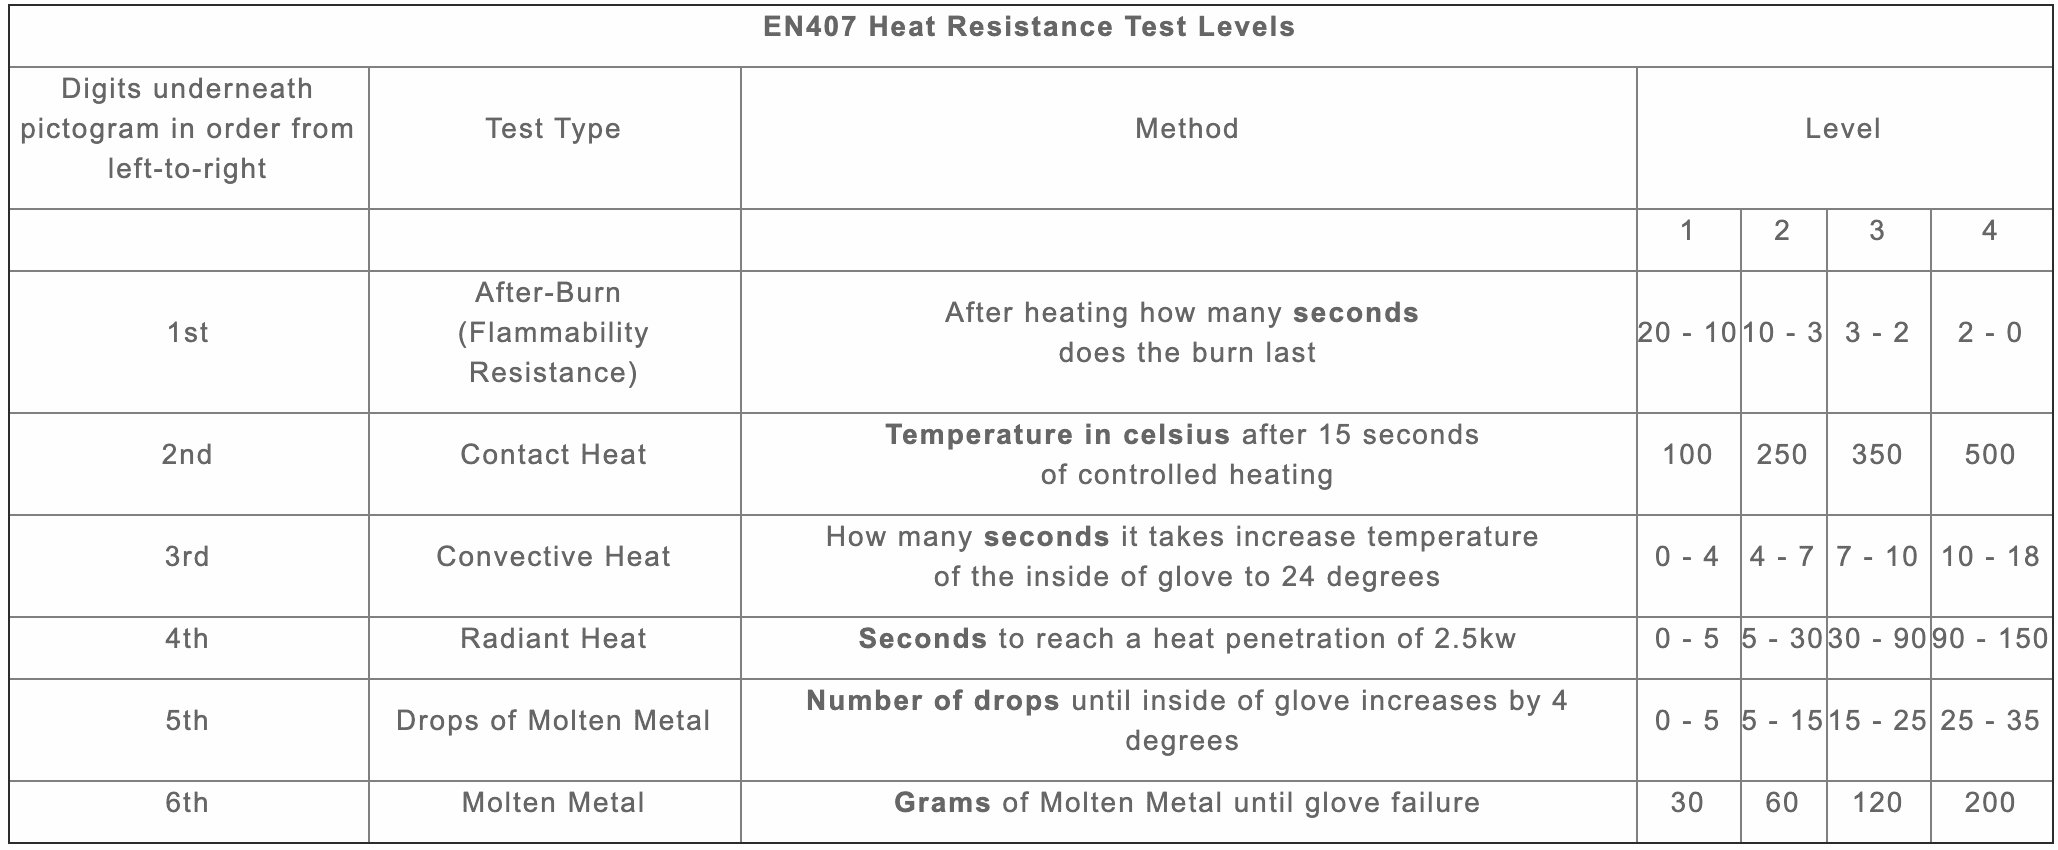 EN407 Heat Resistance Test levels